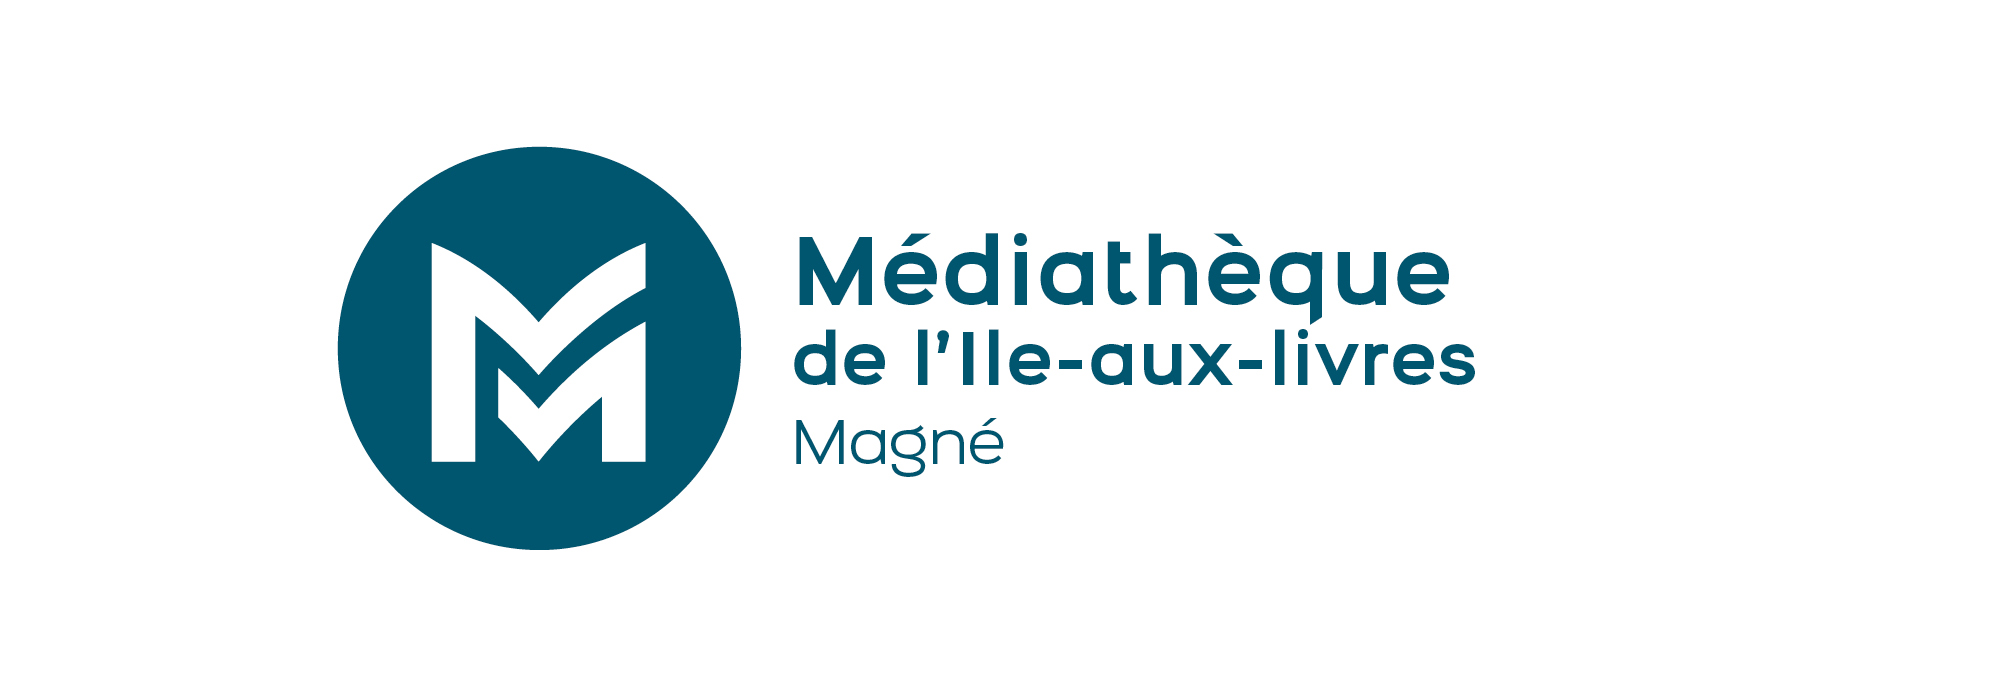 Médiathèque Magné